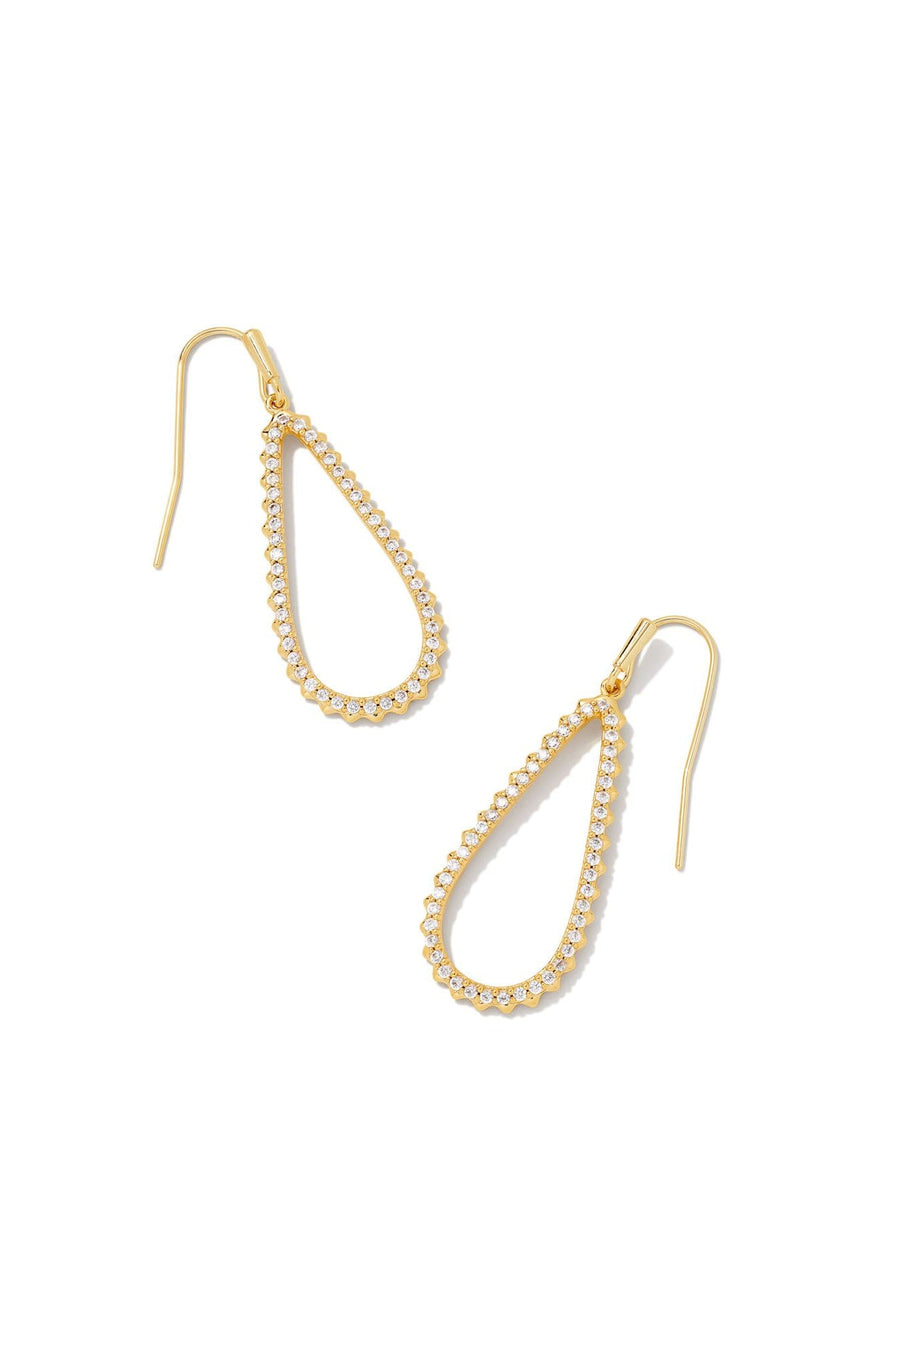 Kendra Scott Payton Small Open Frame Earrings Gold White Crystal